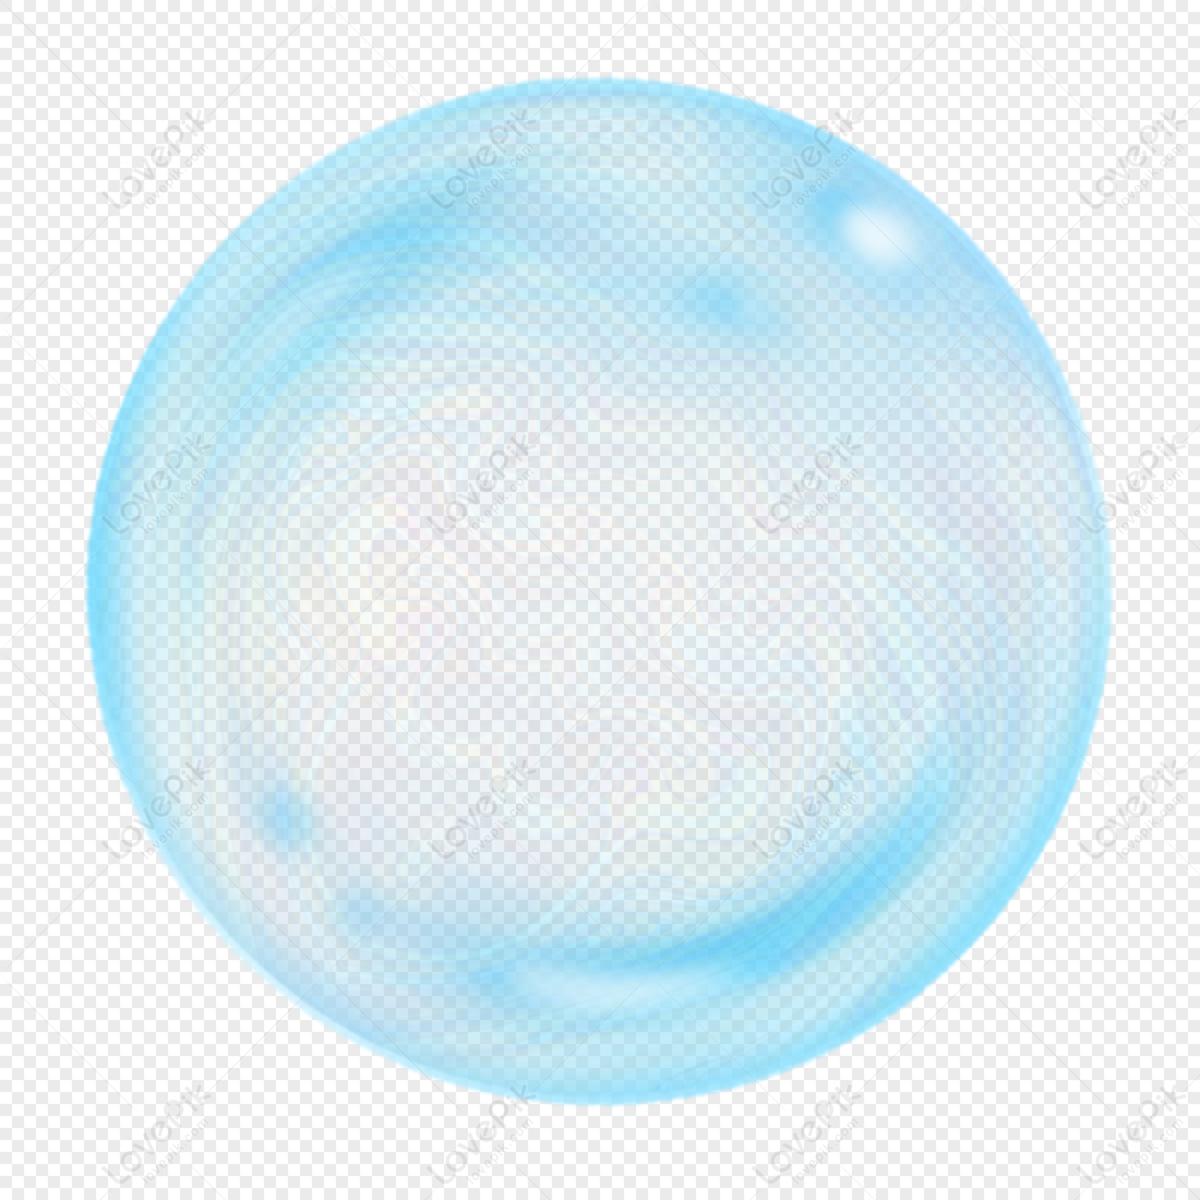 Download Bubbles Transparent HQ PNG Image